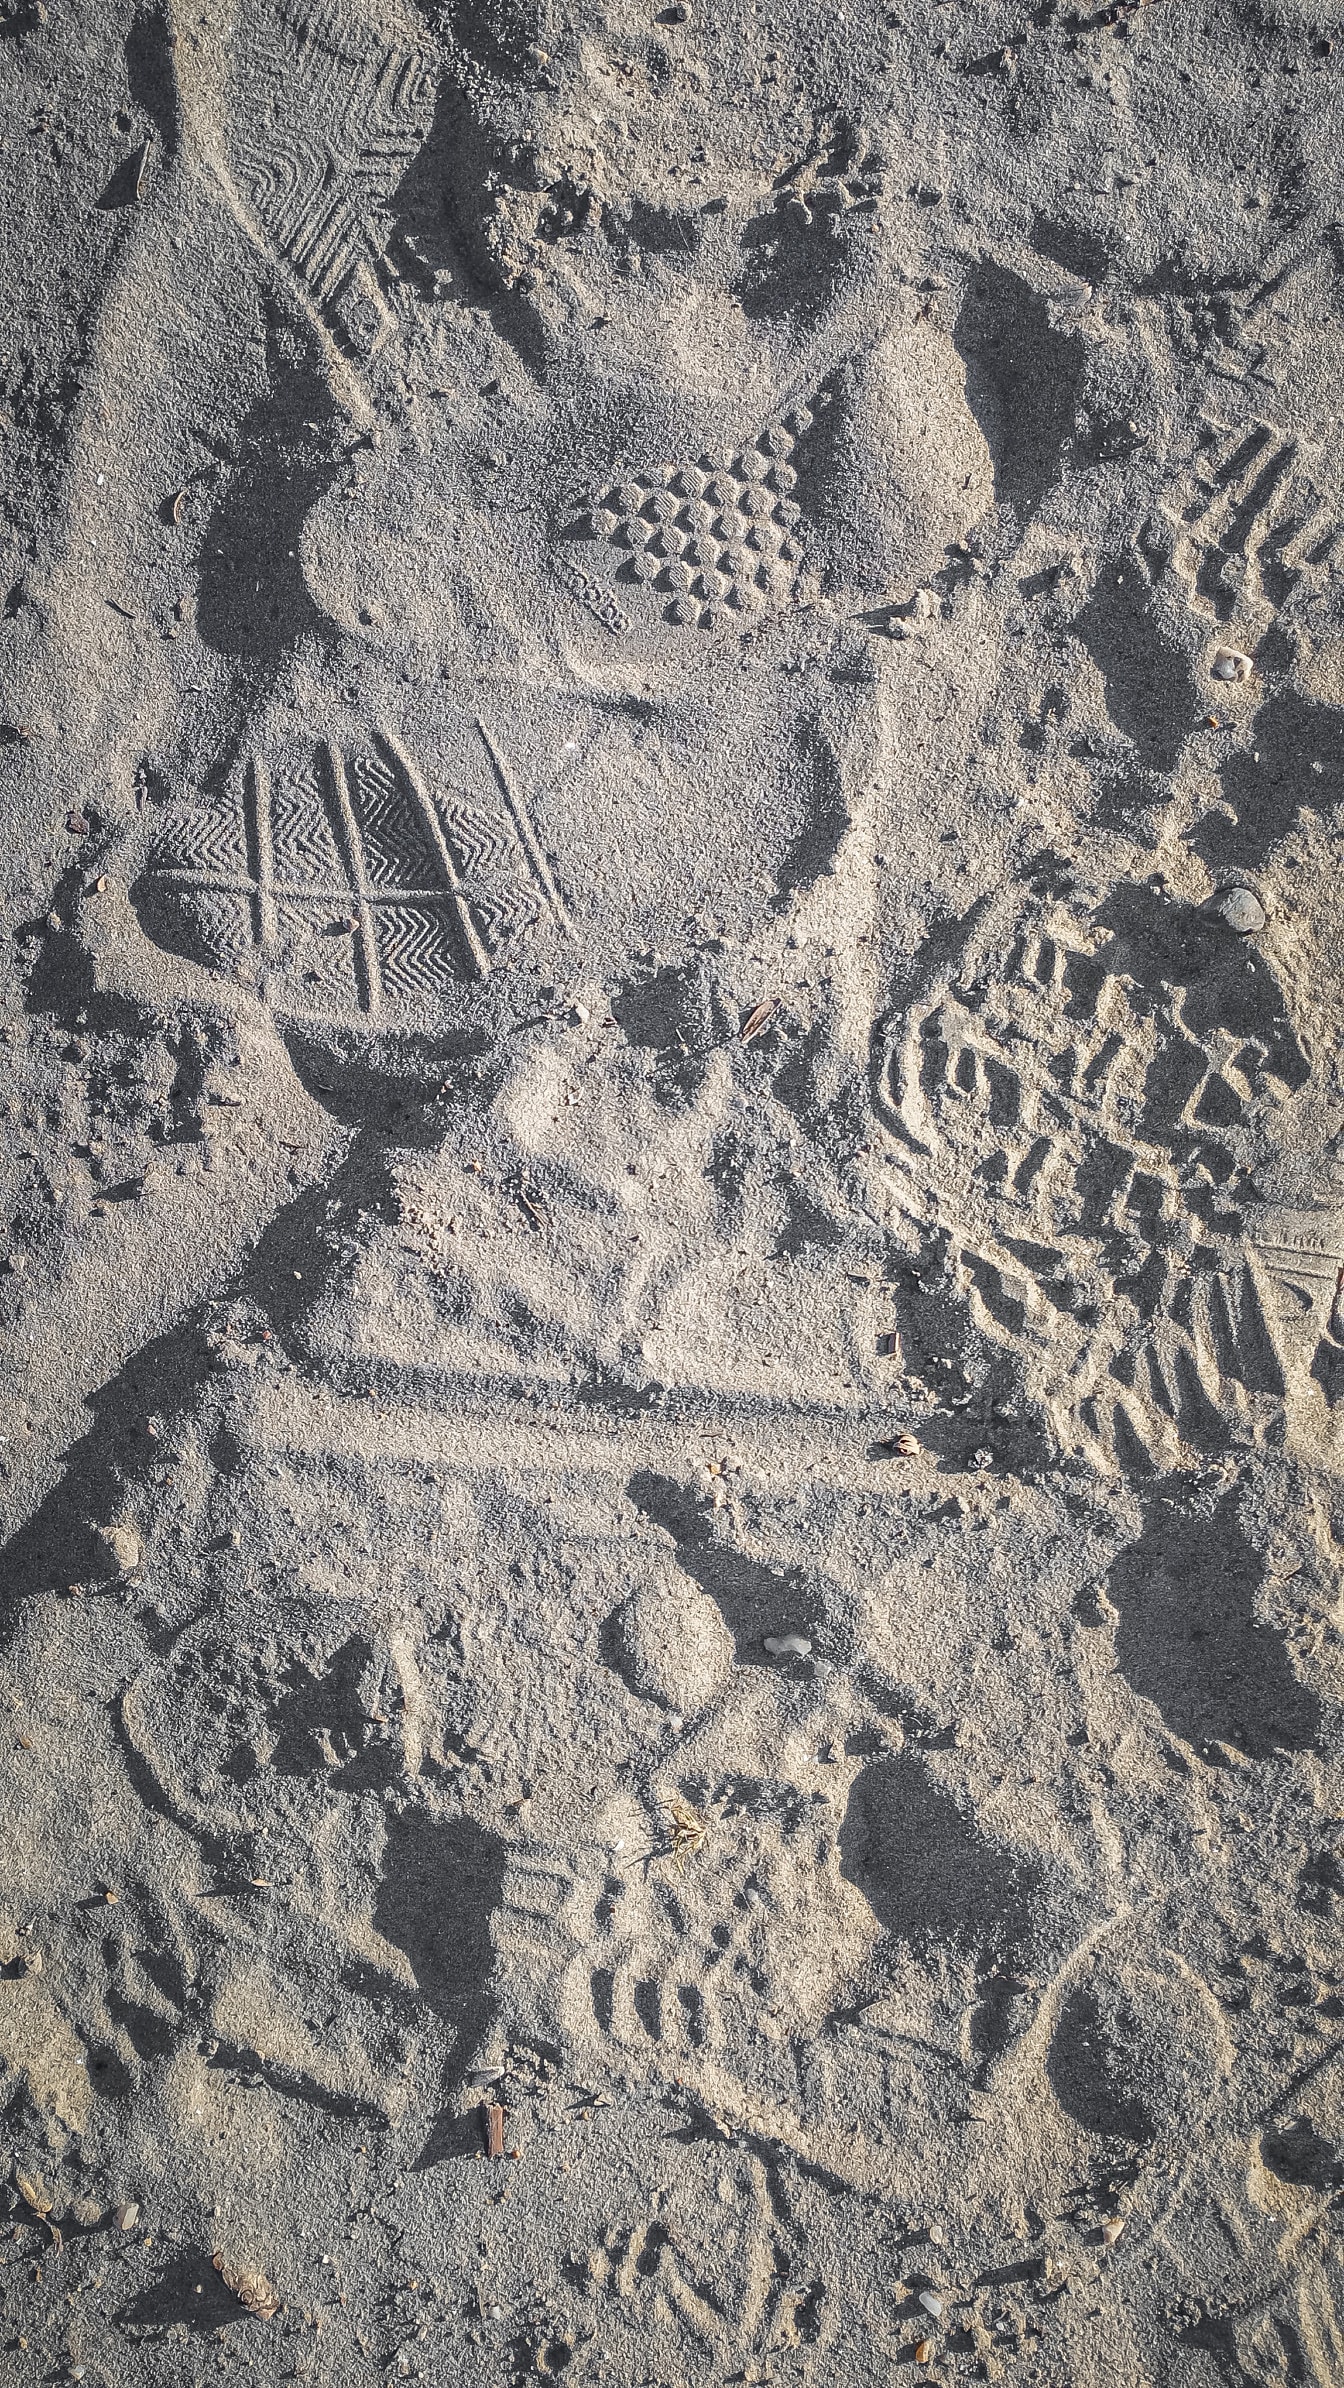 沙子质地粗糙，表面有脚印